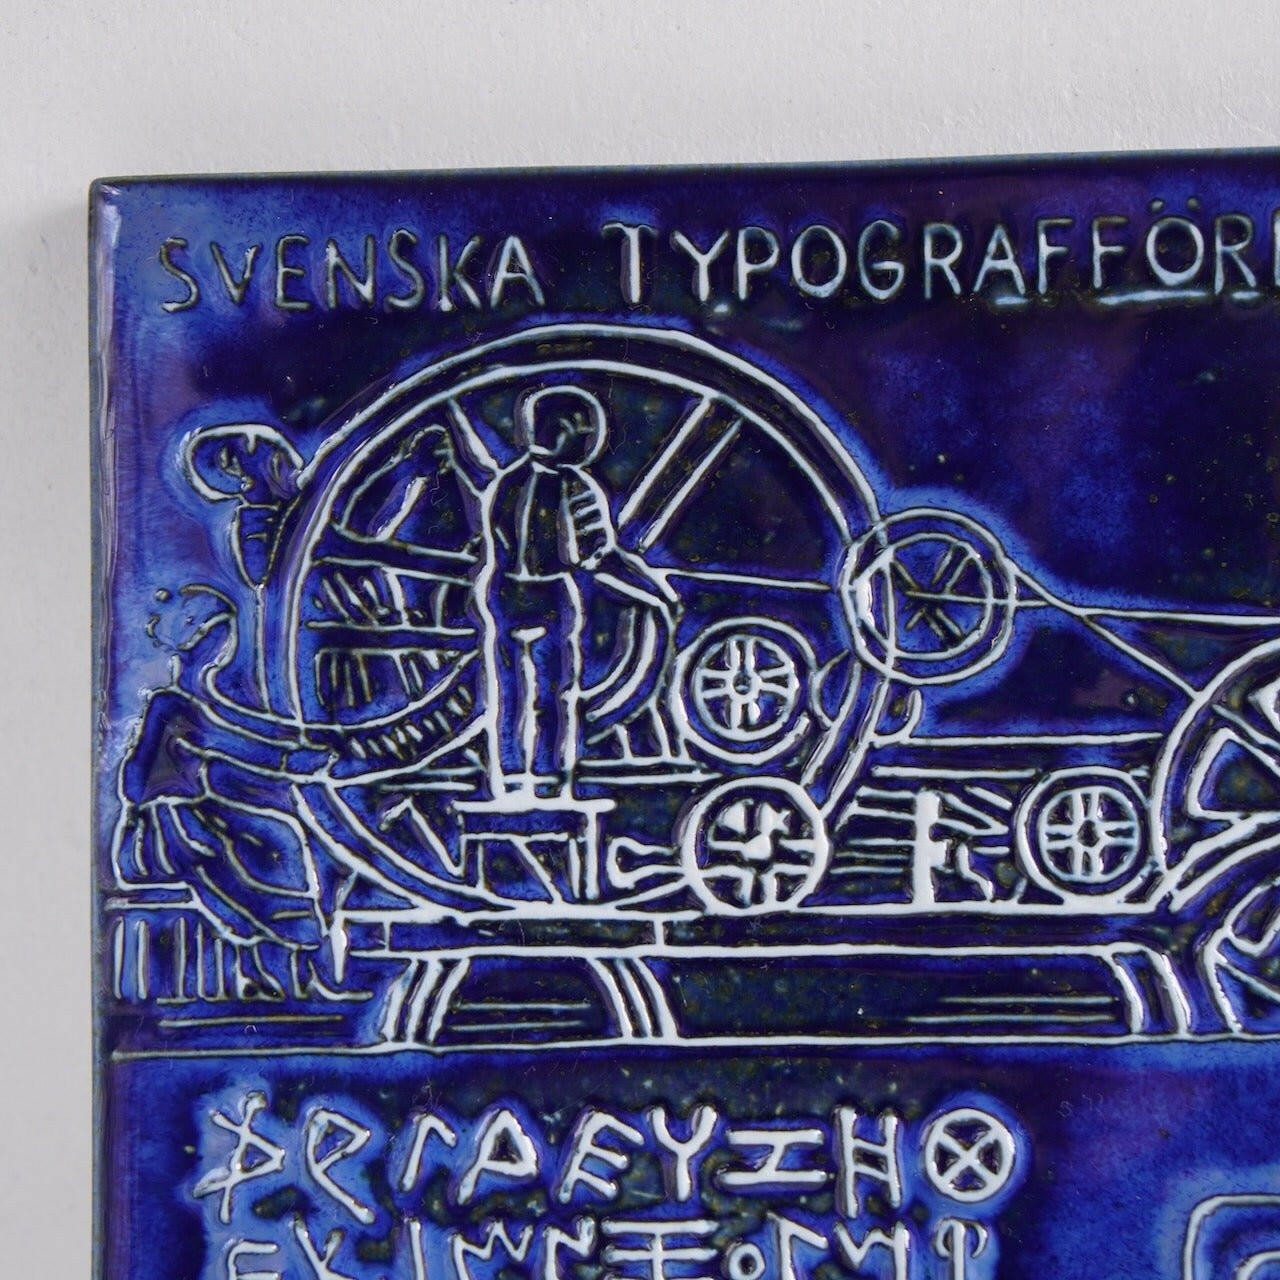 リサ・ラーソン グスタフスベリ タイポグラフィ組合 グーテンベルクの陶板 - 北欧食器Tacksamycket